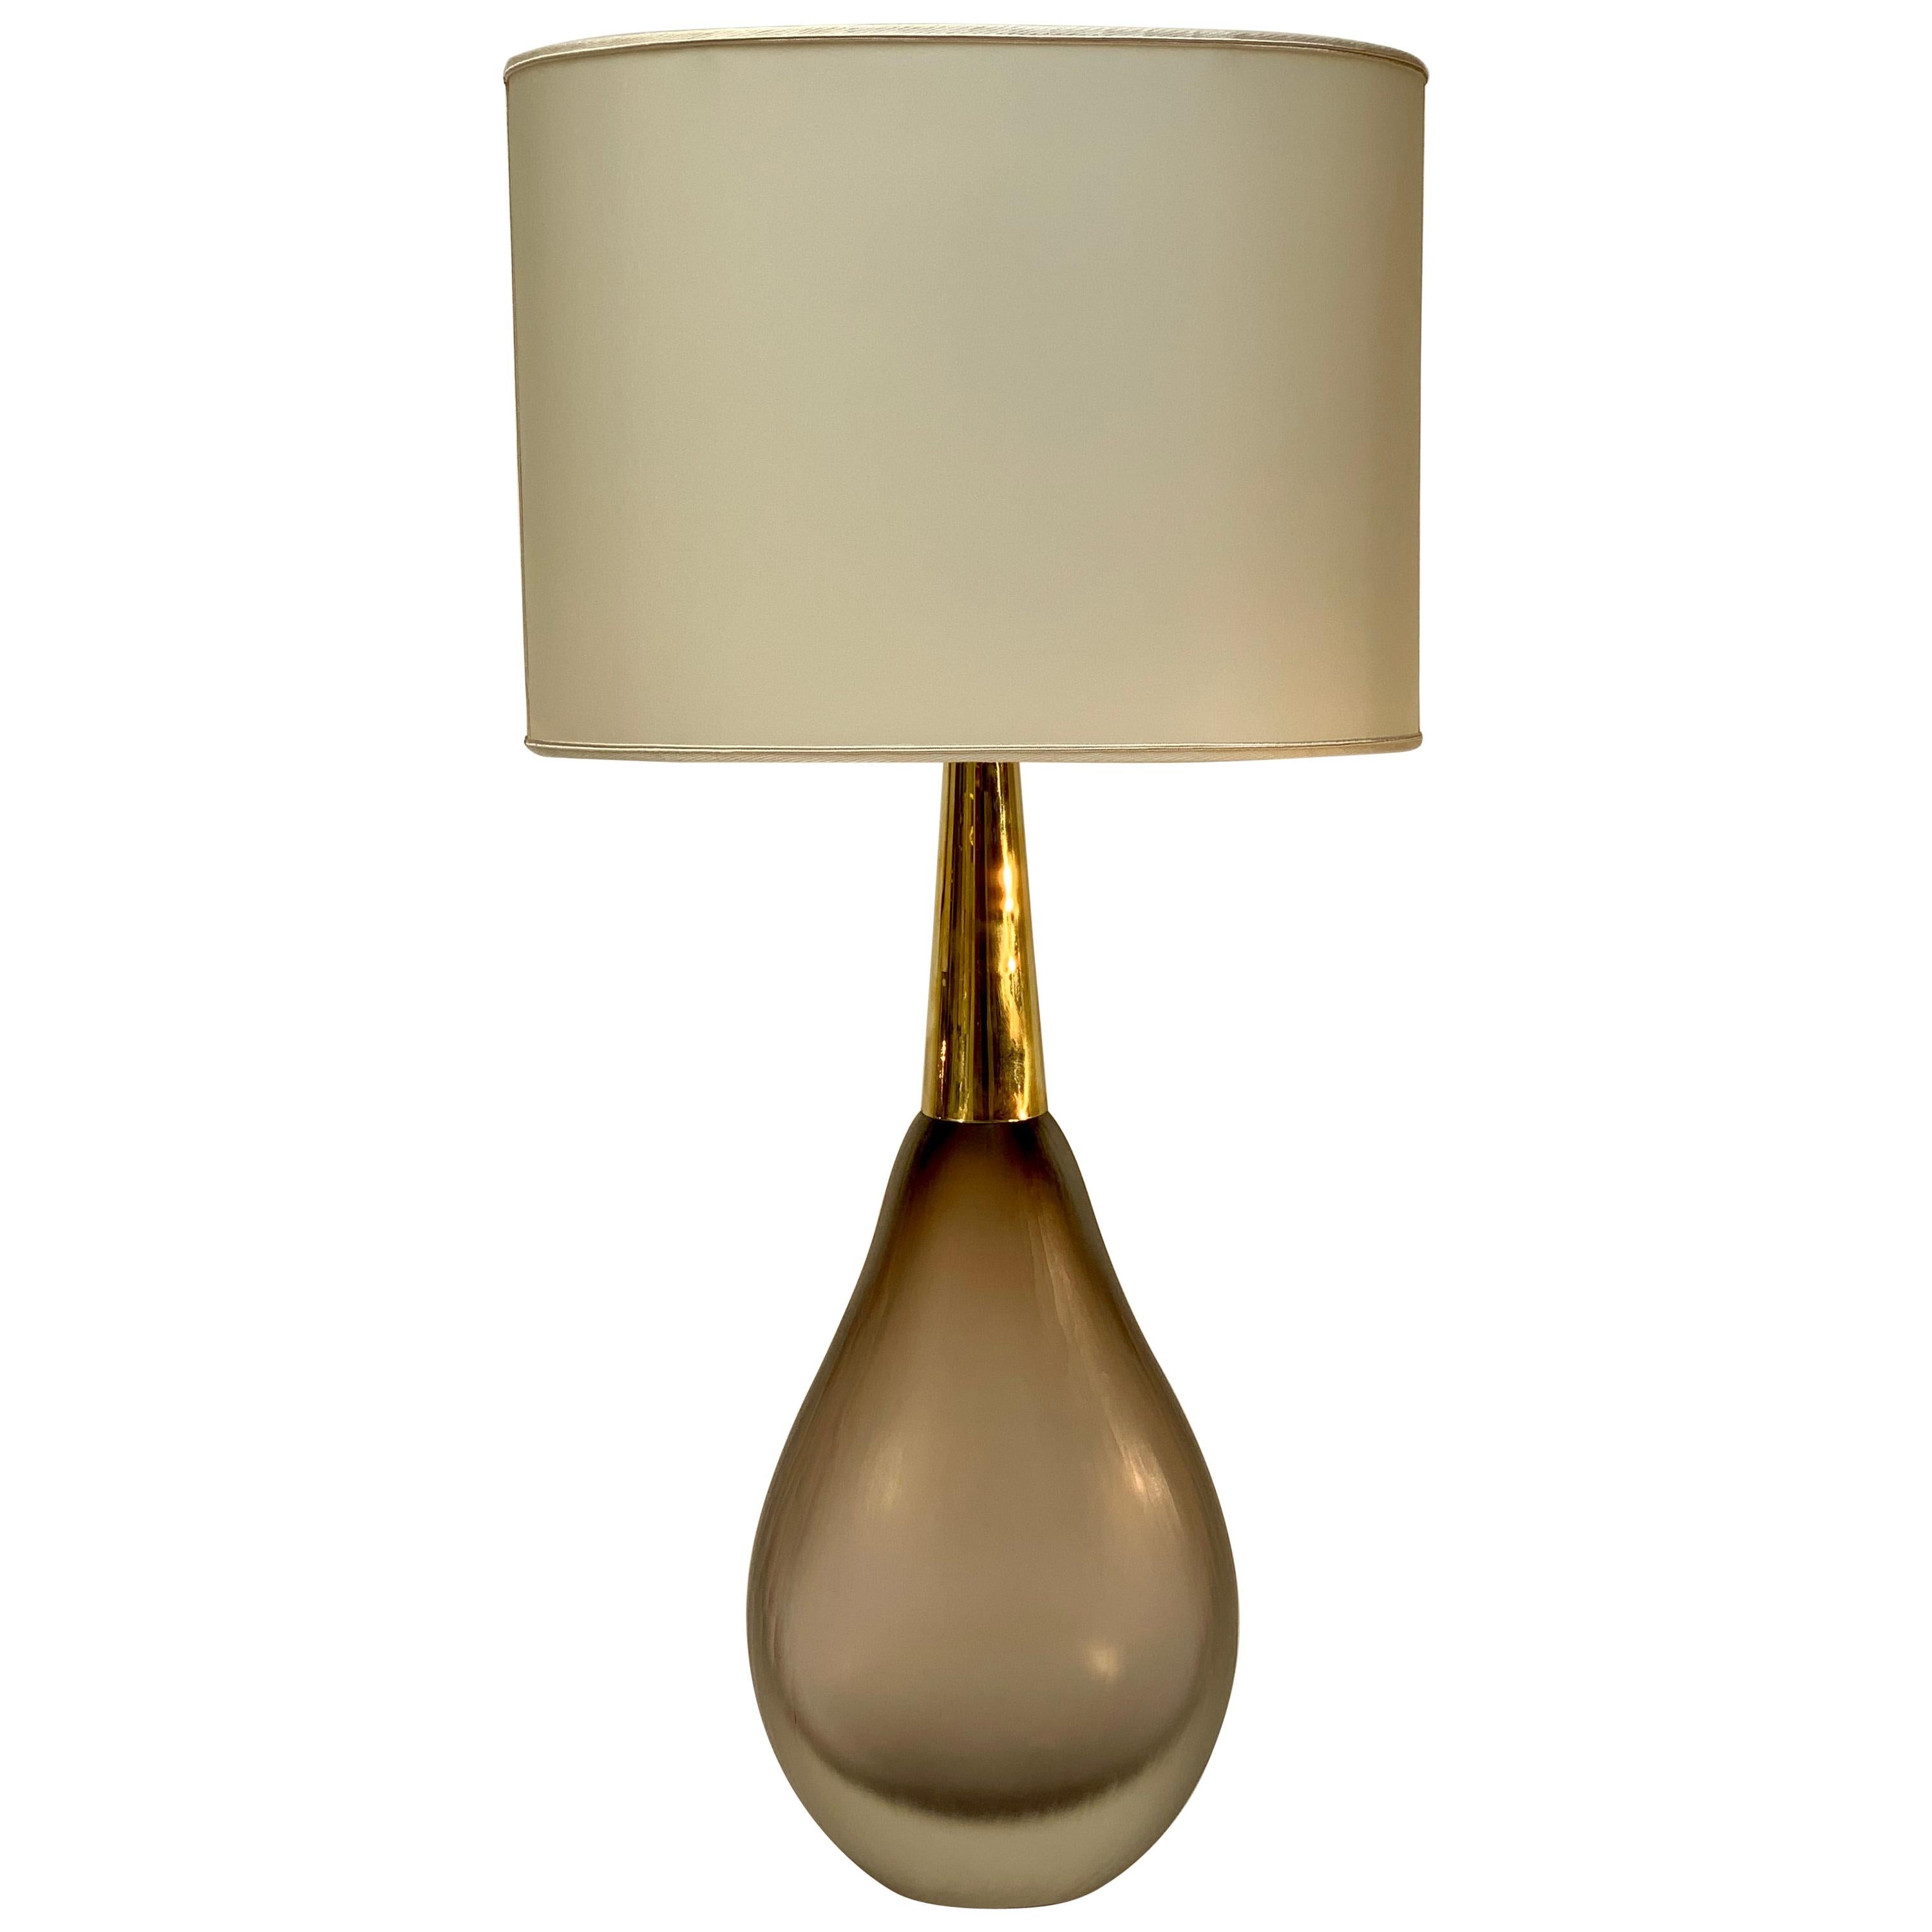 Seguso Vetri D'Arte "Sommerso" Murano Glass Midcentury Table Lamp